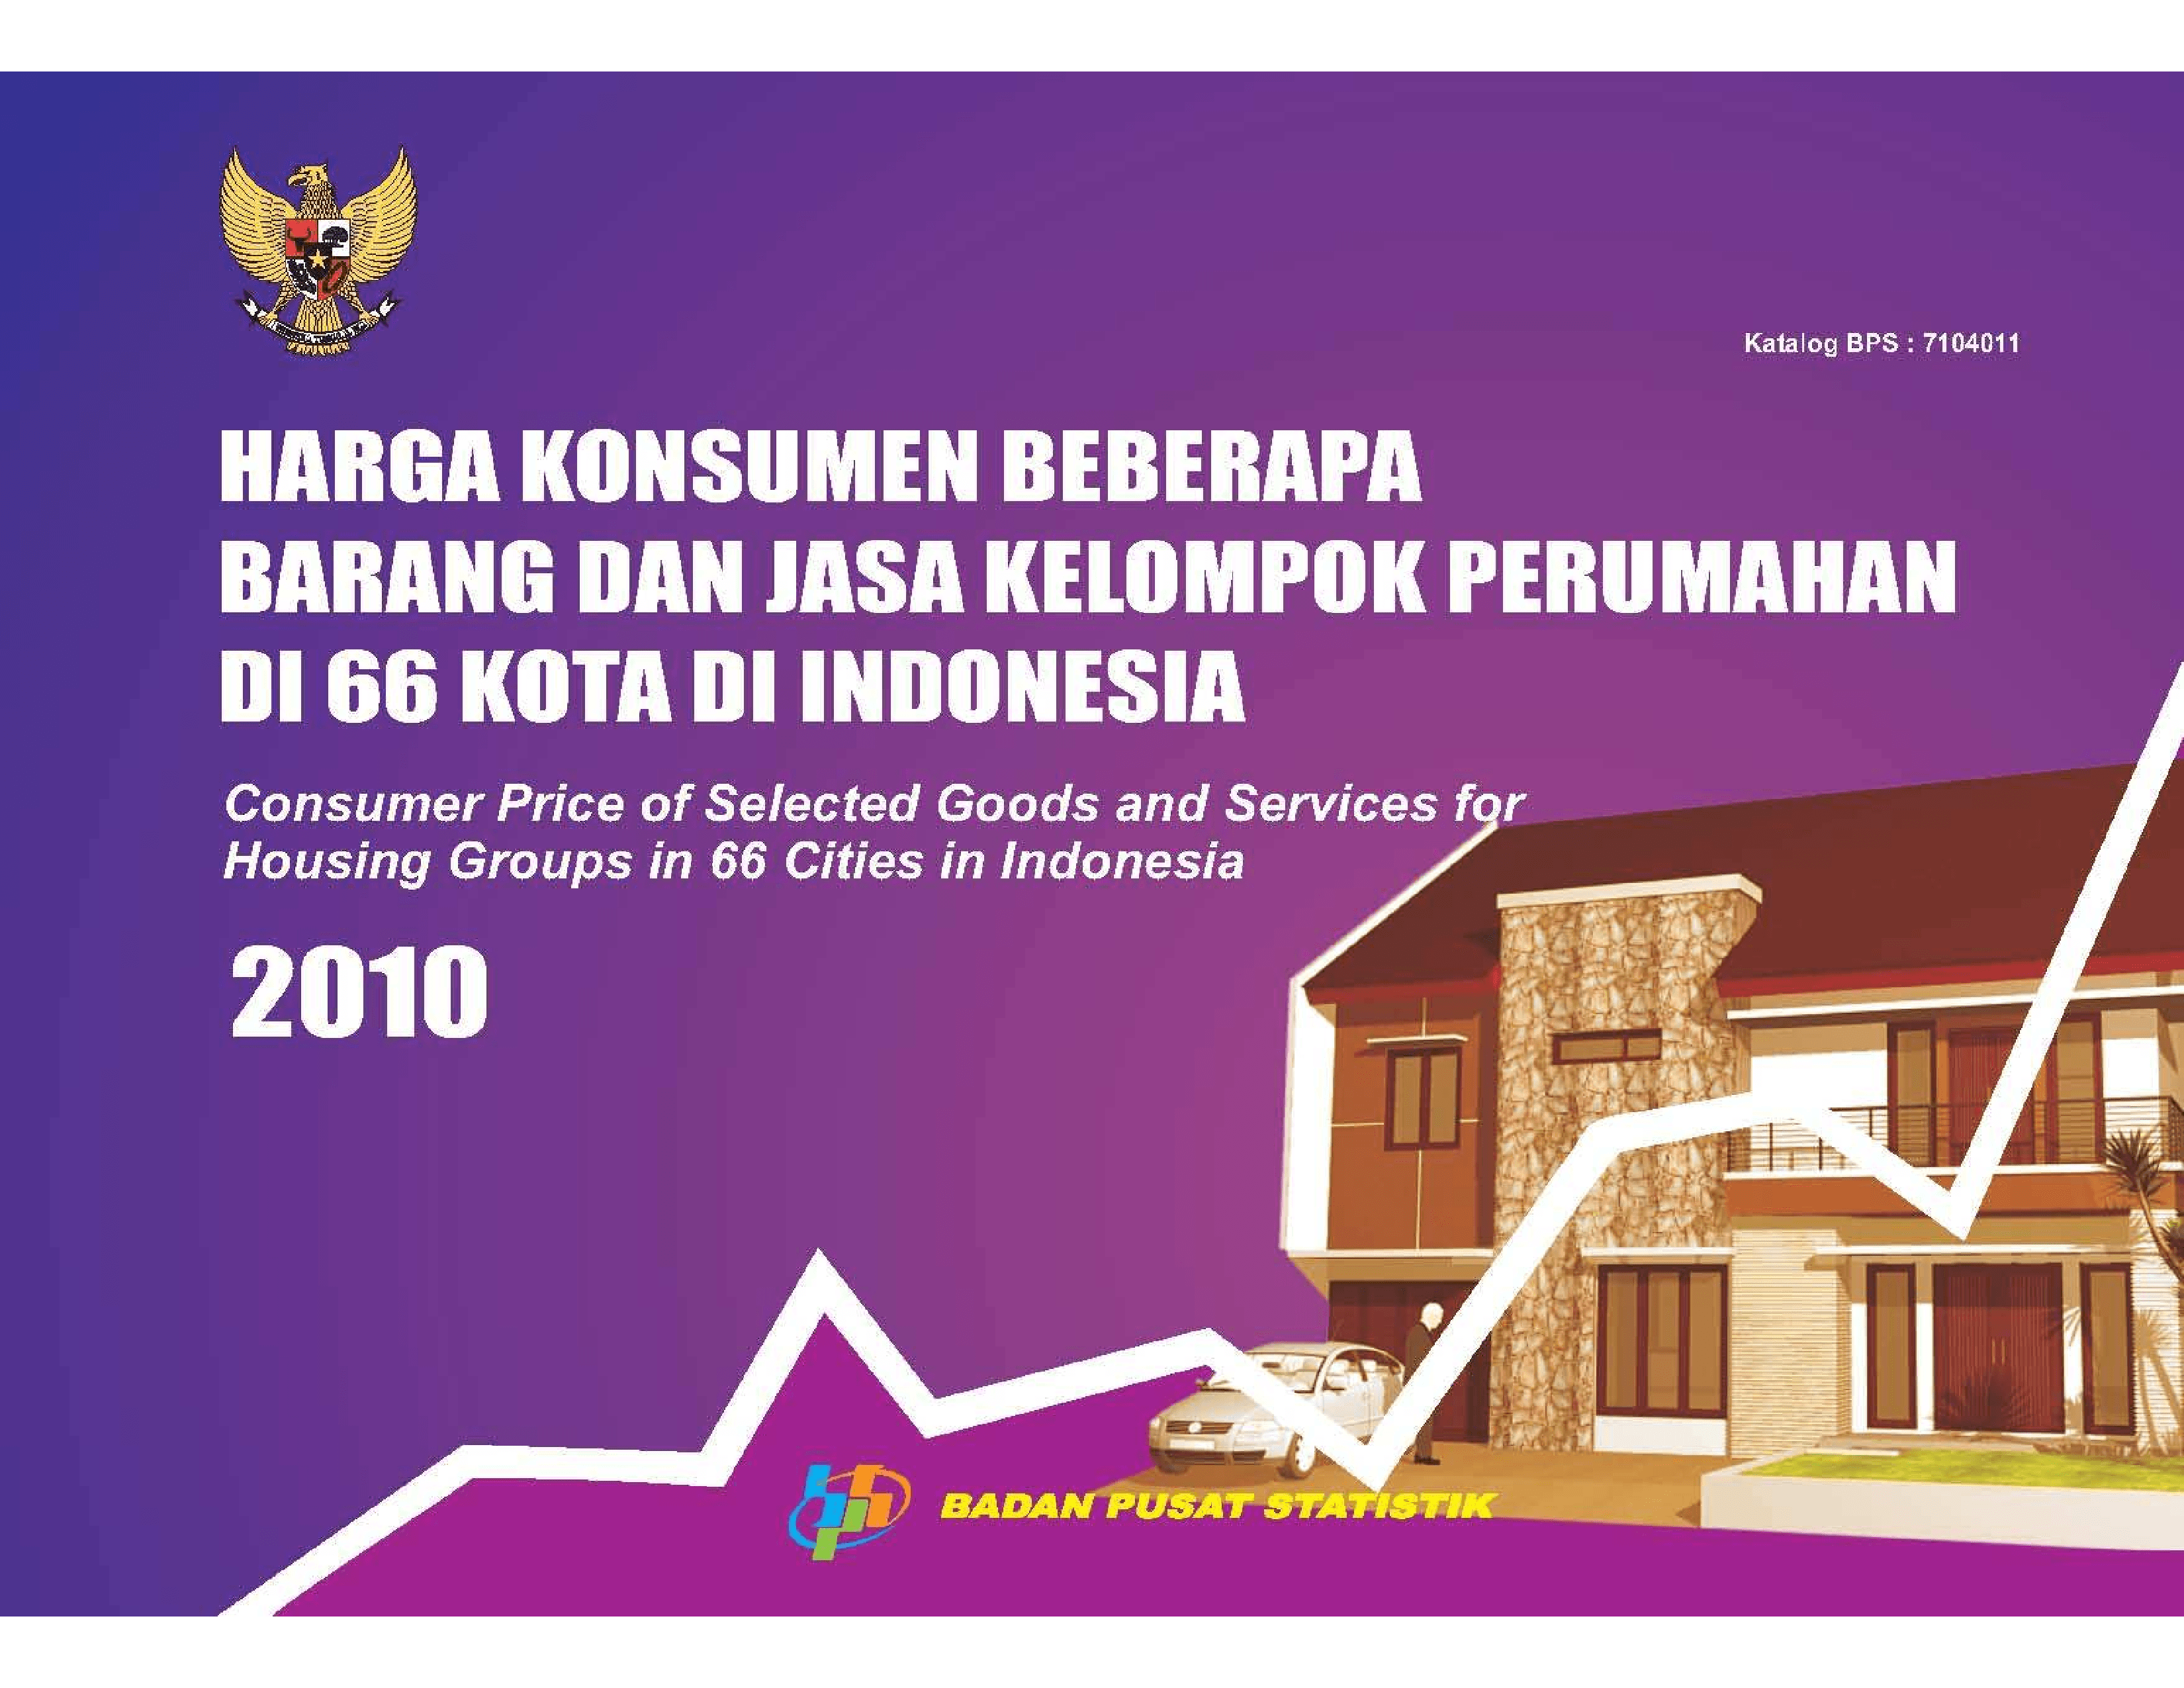 Harga Konsumen Beberapa Barang dan Jasa Kelompok Perumahan di 66 Kota di Indonesaia 2010